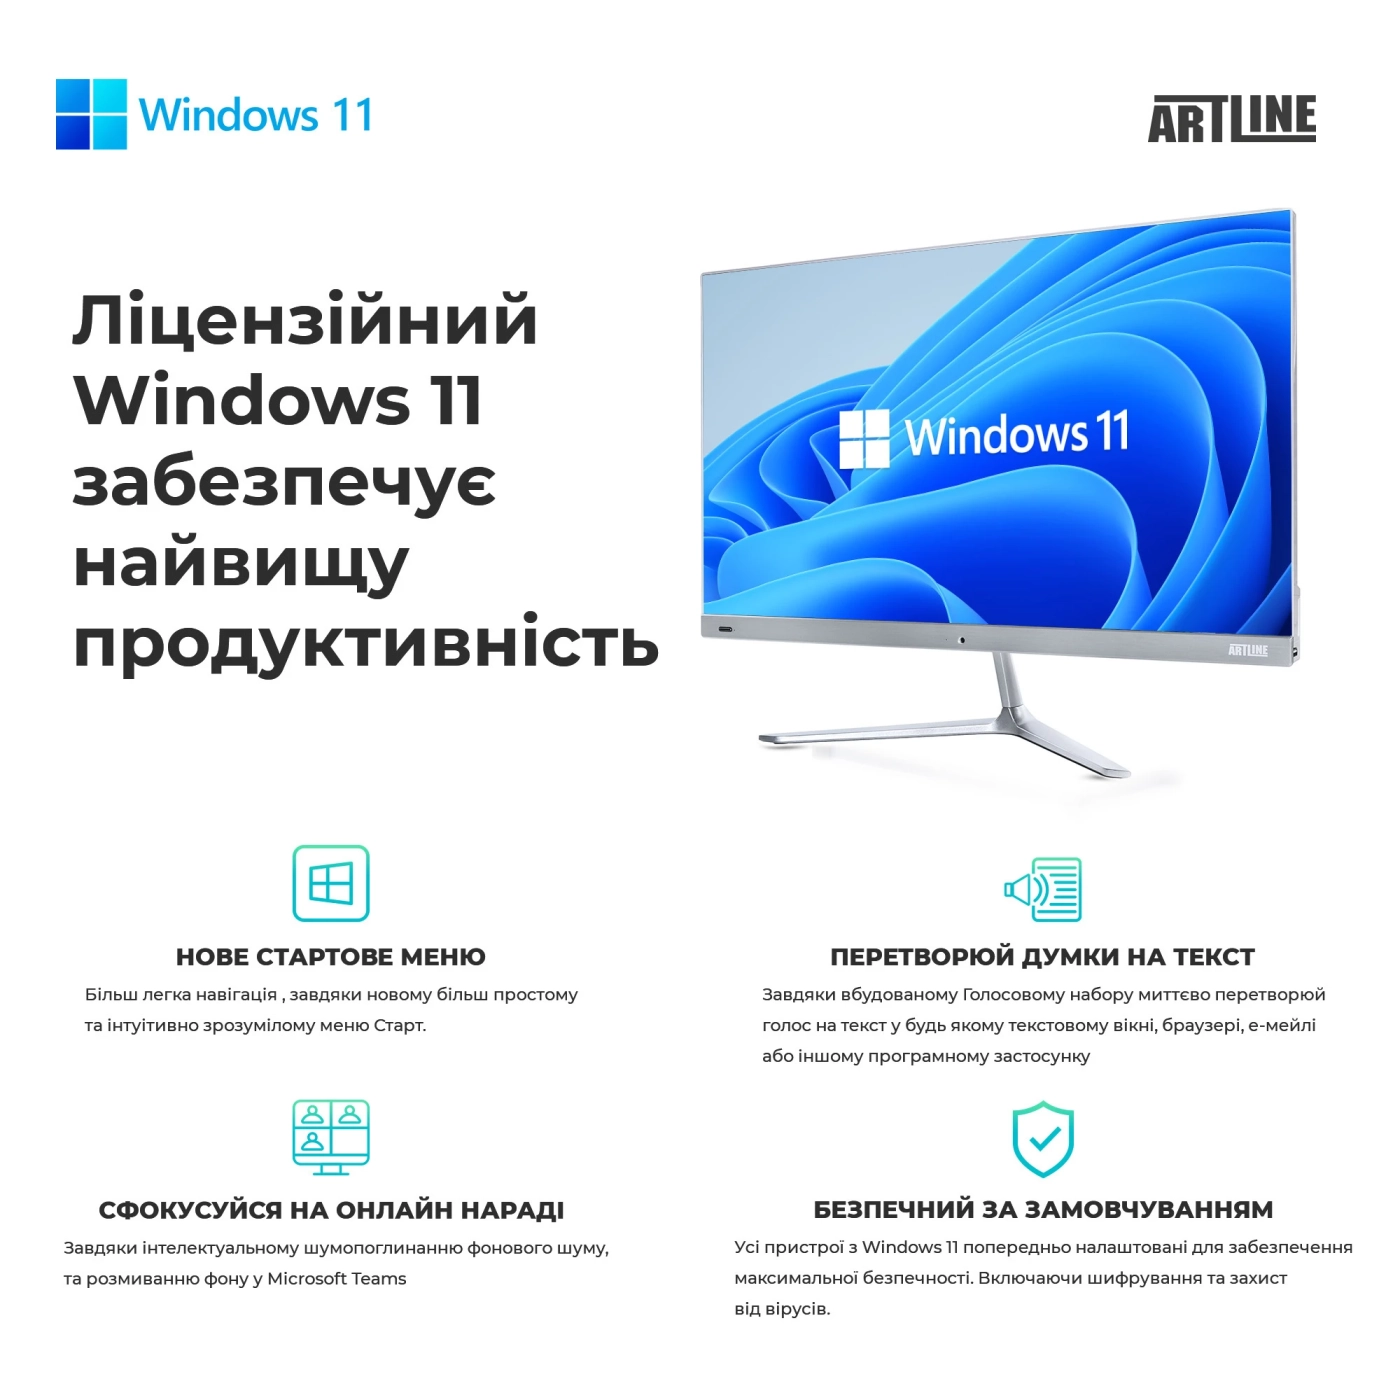 Купить Рабочая станция ARTLINE WorkStation W73 Windows 11 Pro (W73v26Win) - фото 10